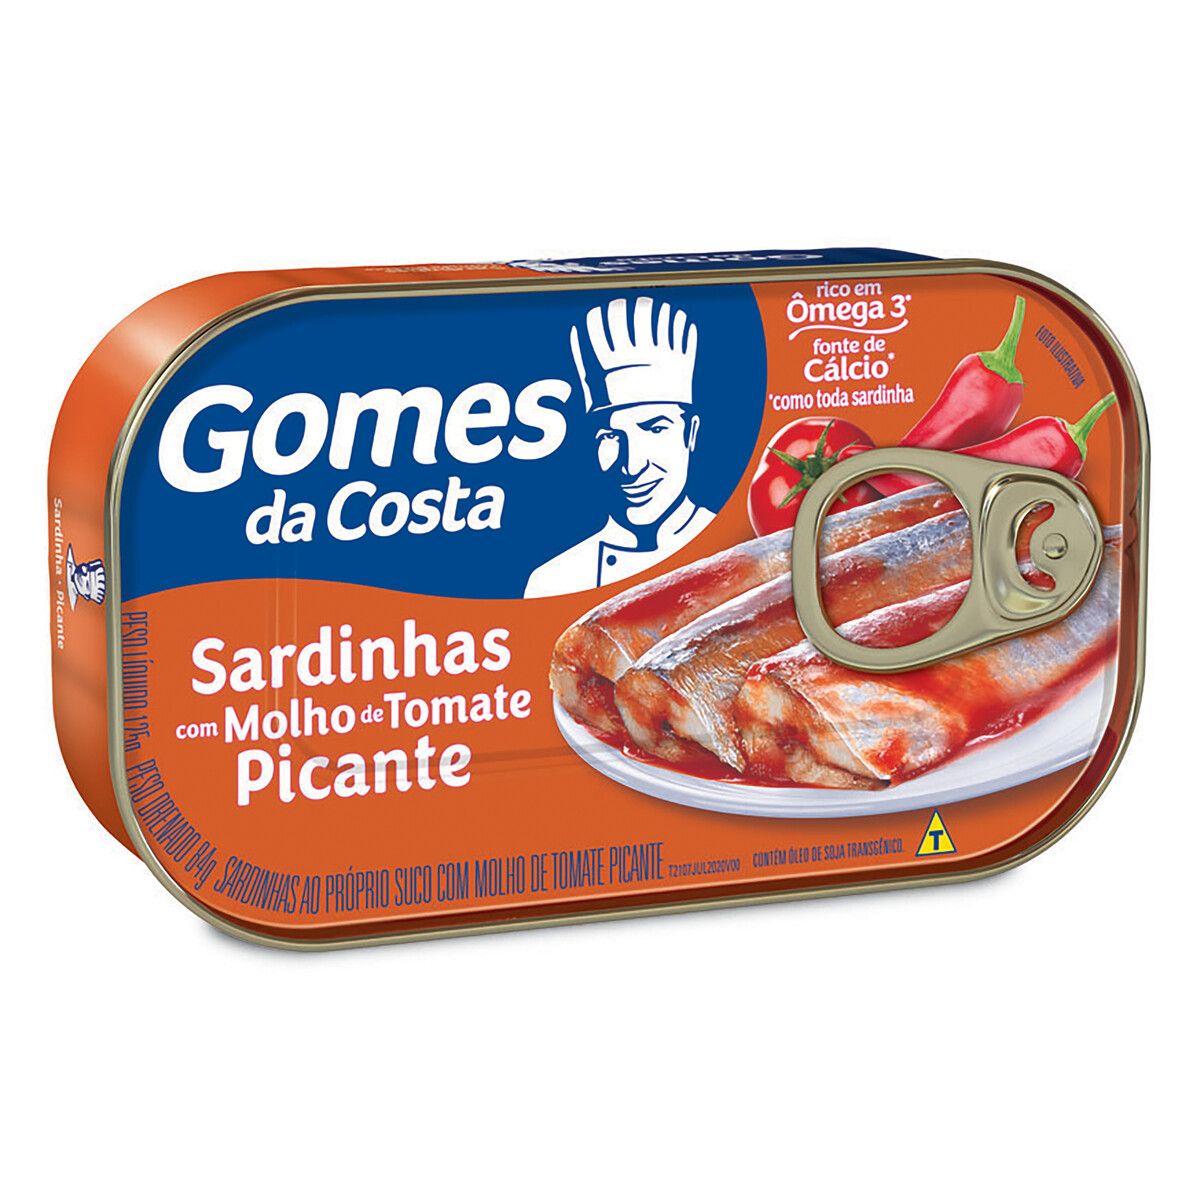 Sardinha Gomes da Costa ao Molho de Tomate Picante Lata 125g image number 0